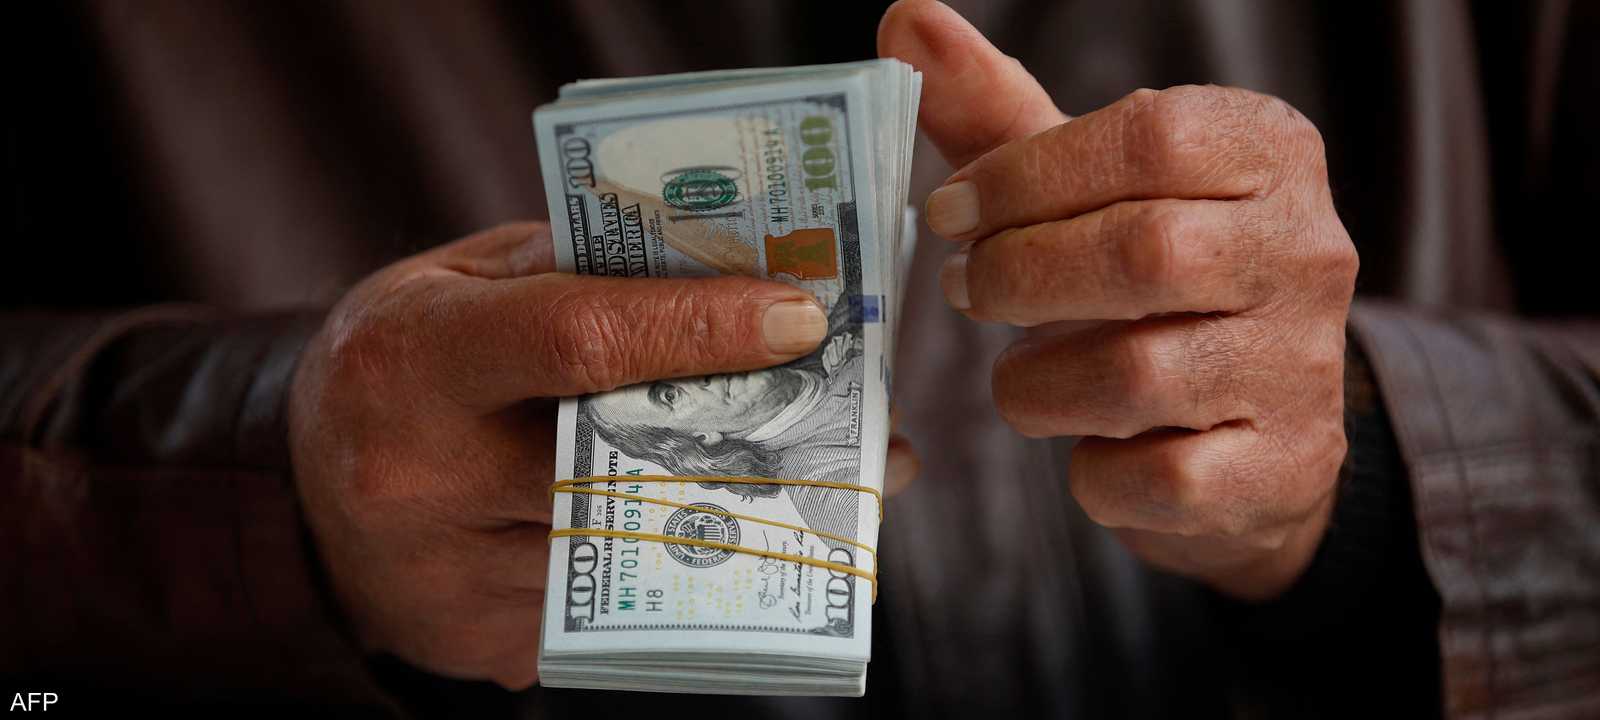 البنك المركزي العراقي: تعليمات جديدة لمصارف بشأن سعر الدولار